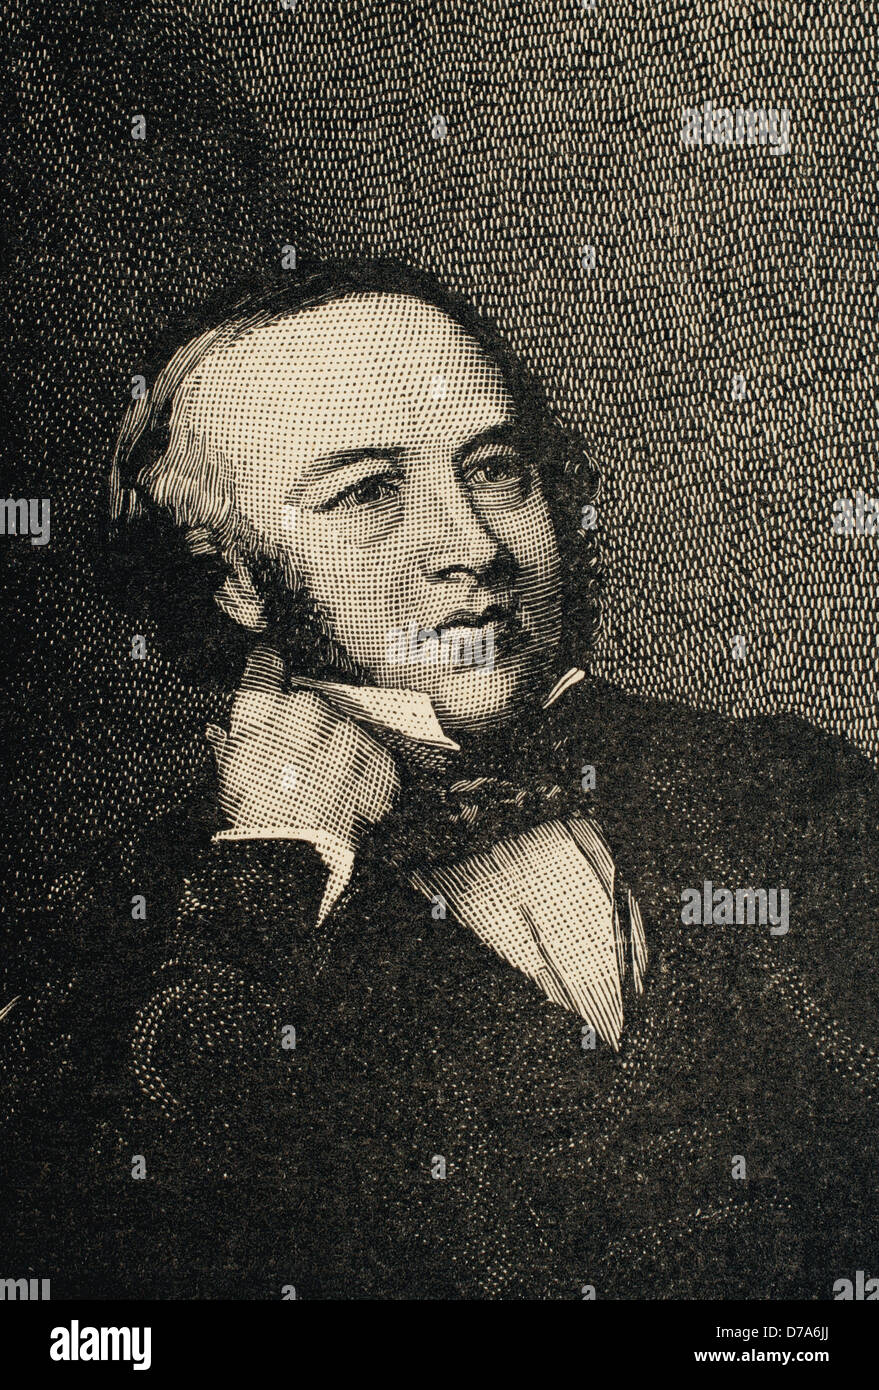 Sir Rowland Hill (1795-1879). Lehrer und Schöpfer des ersten britischen Briefmarke in der Geschichte: die Penny Black. Gravur. Stockfoto